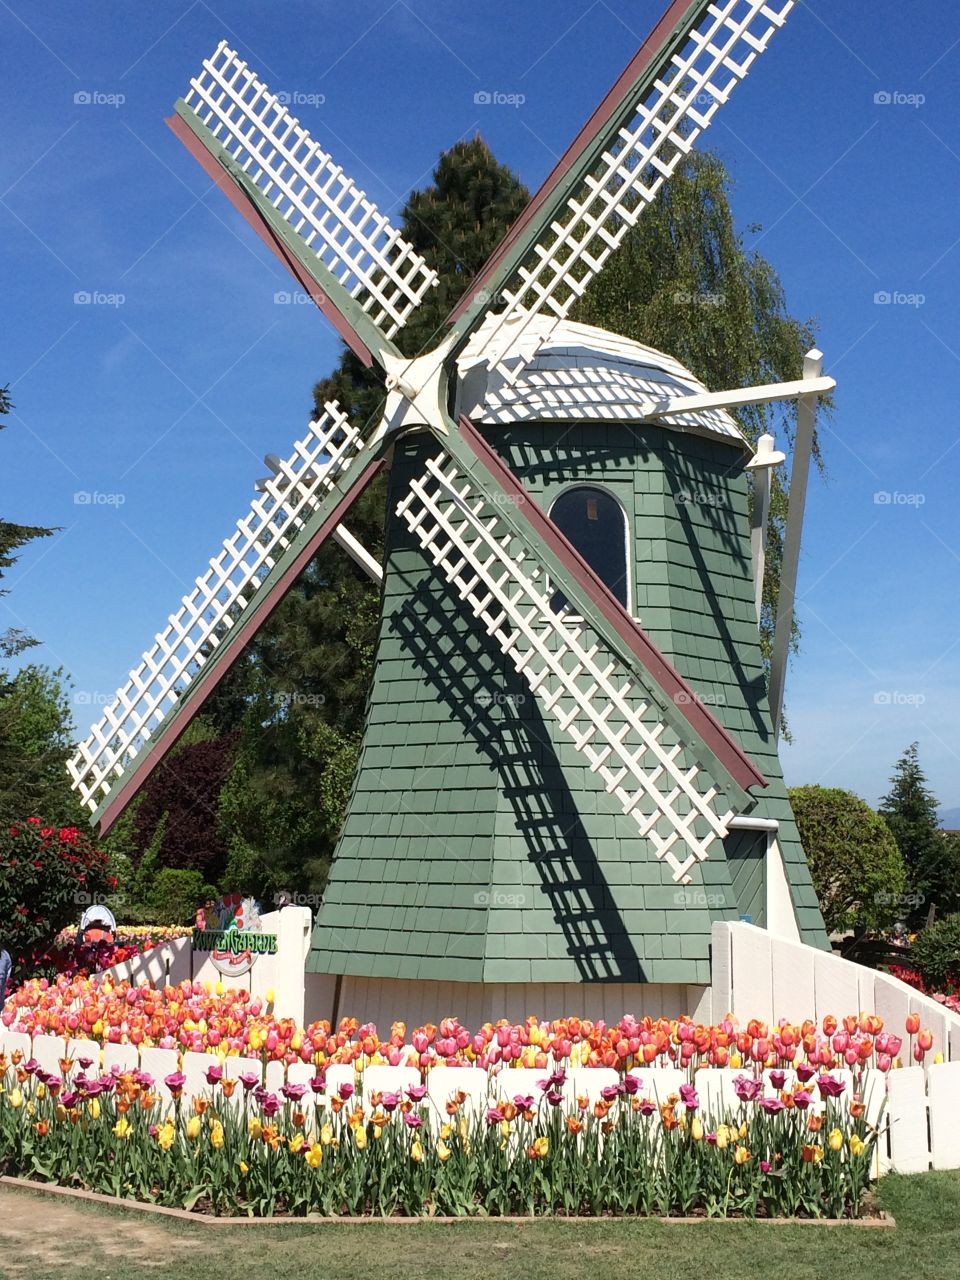 "Windmill"